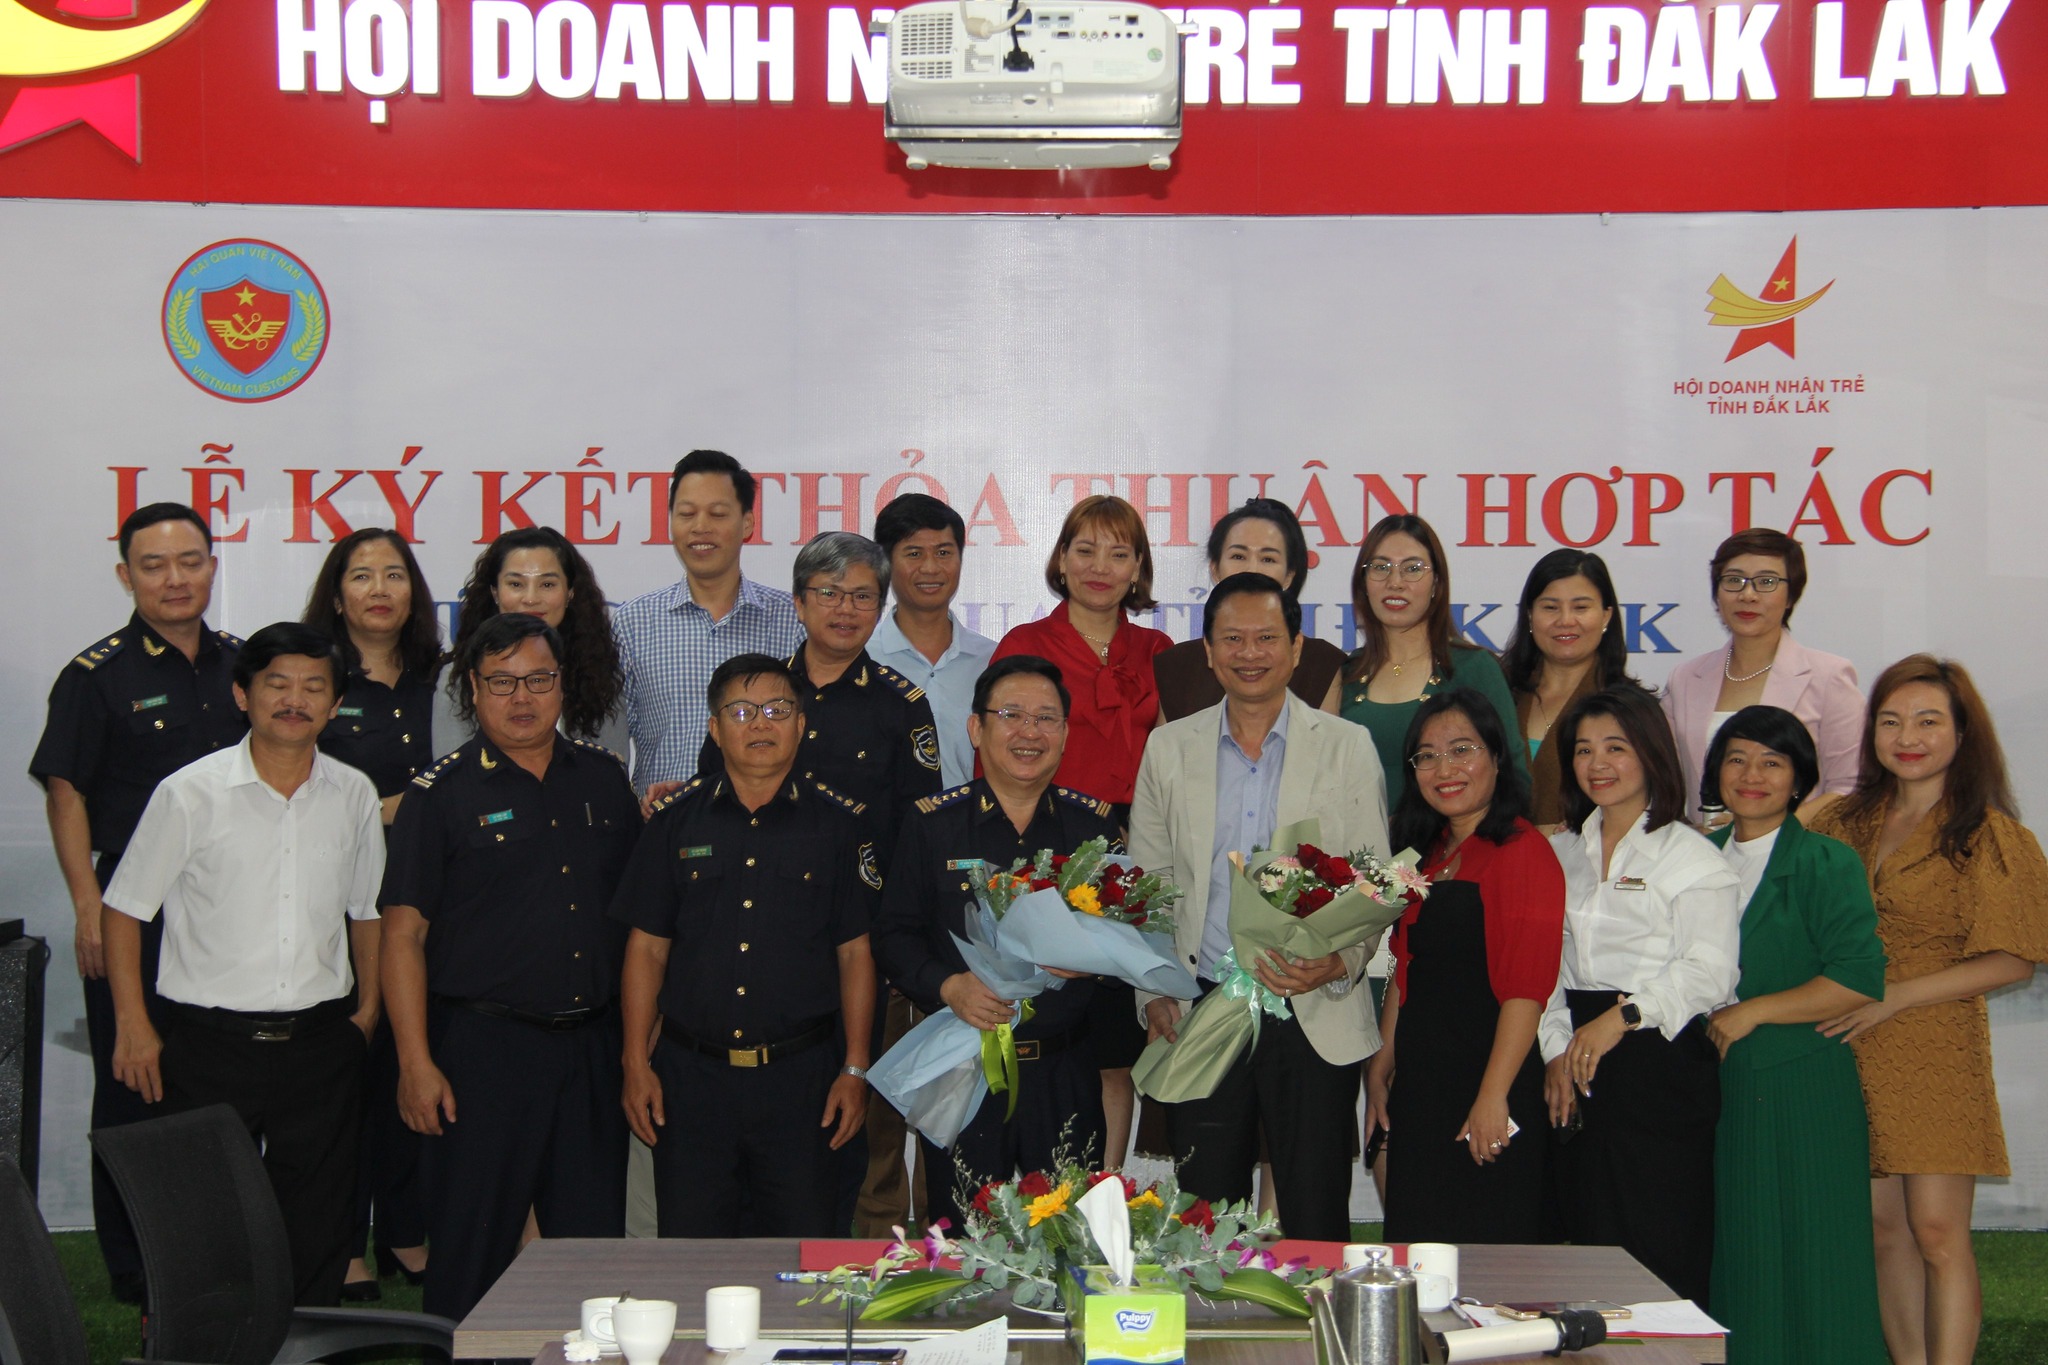 Lễ ký kết Hợp tác giữa Cục Hải quan tỉnh Đắk Lắk & Hội doanh nhân trẻ tỉnh Đắk Lắk